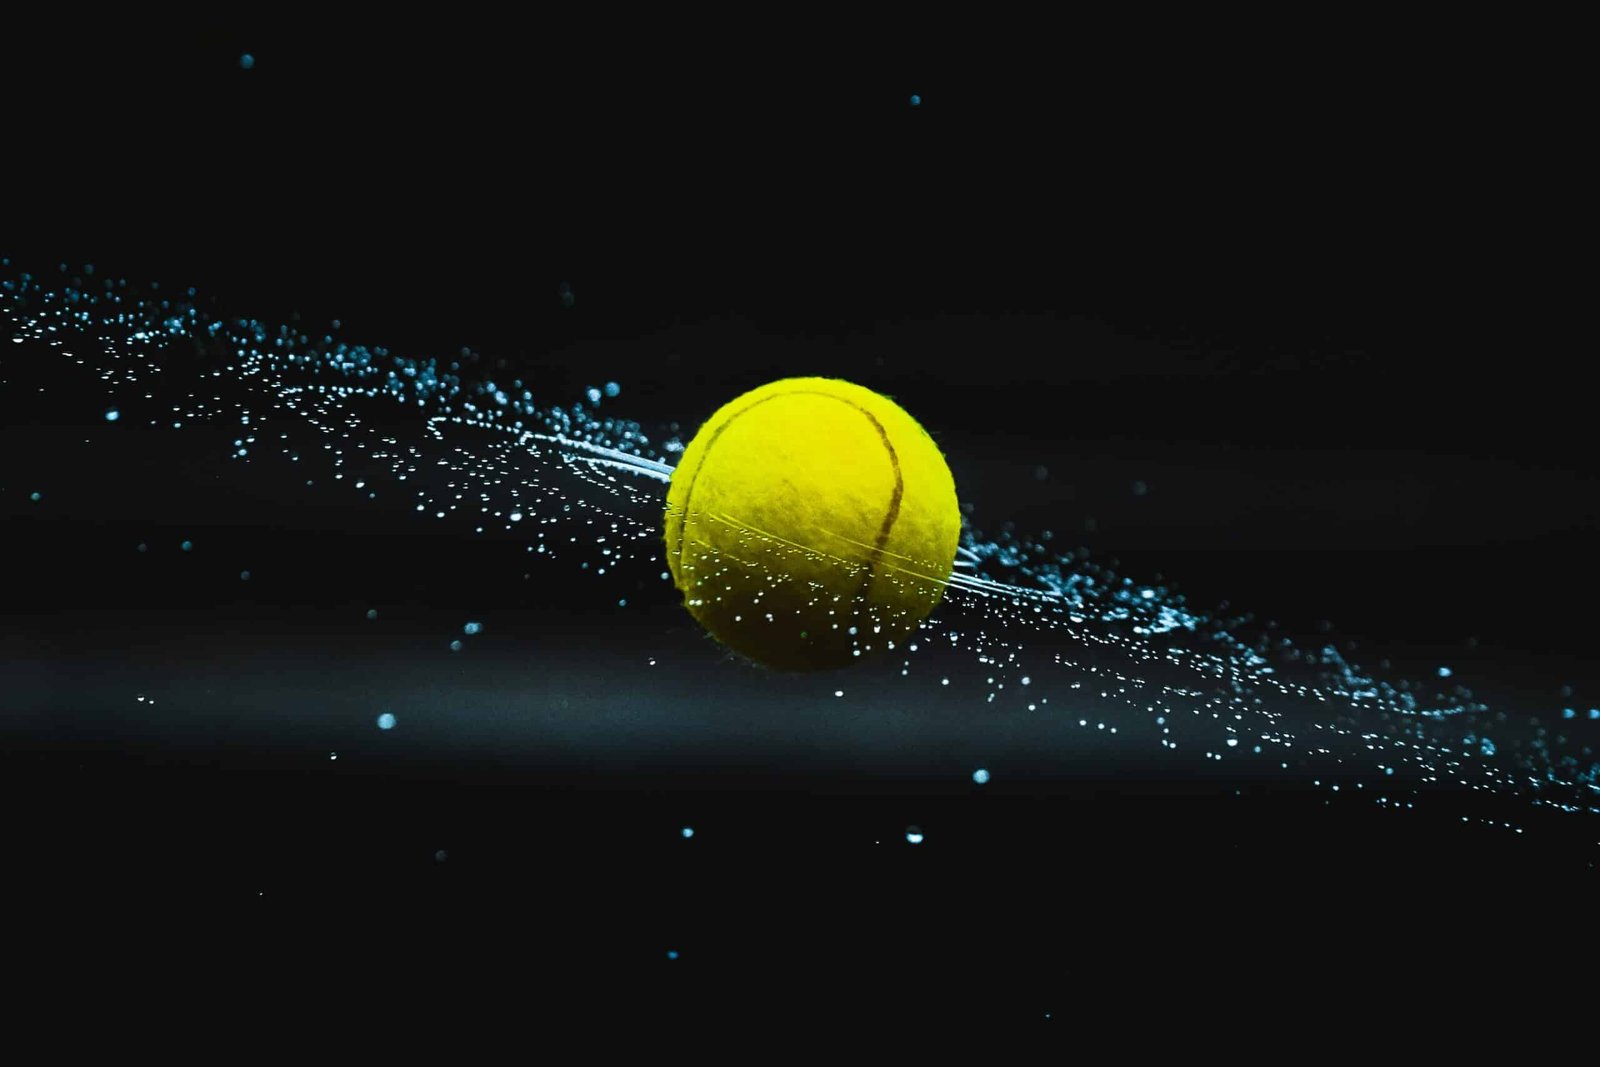 découvrez tout ce qu'il y a à savoir sur le tennis, de ses règles et ses techniques à ses stars et tournois célèbres, sur notre site.